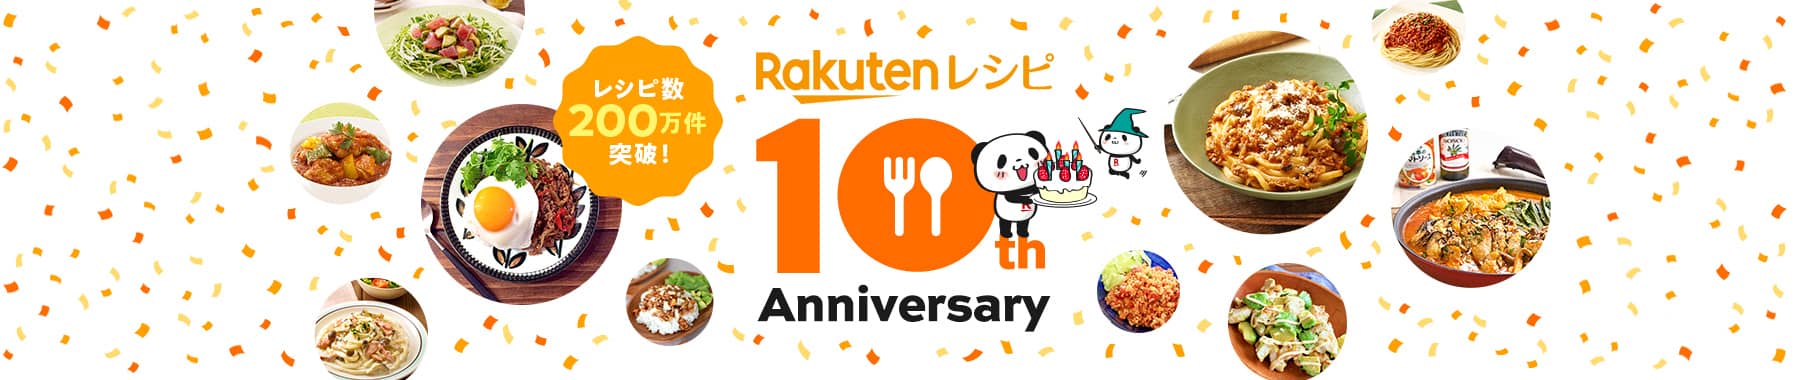 Rakutenレシピ 10th Anniversary